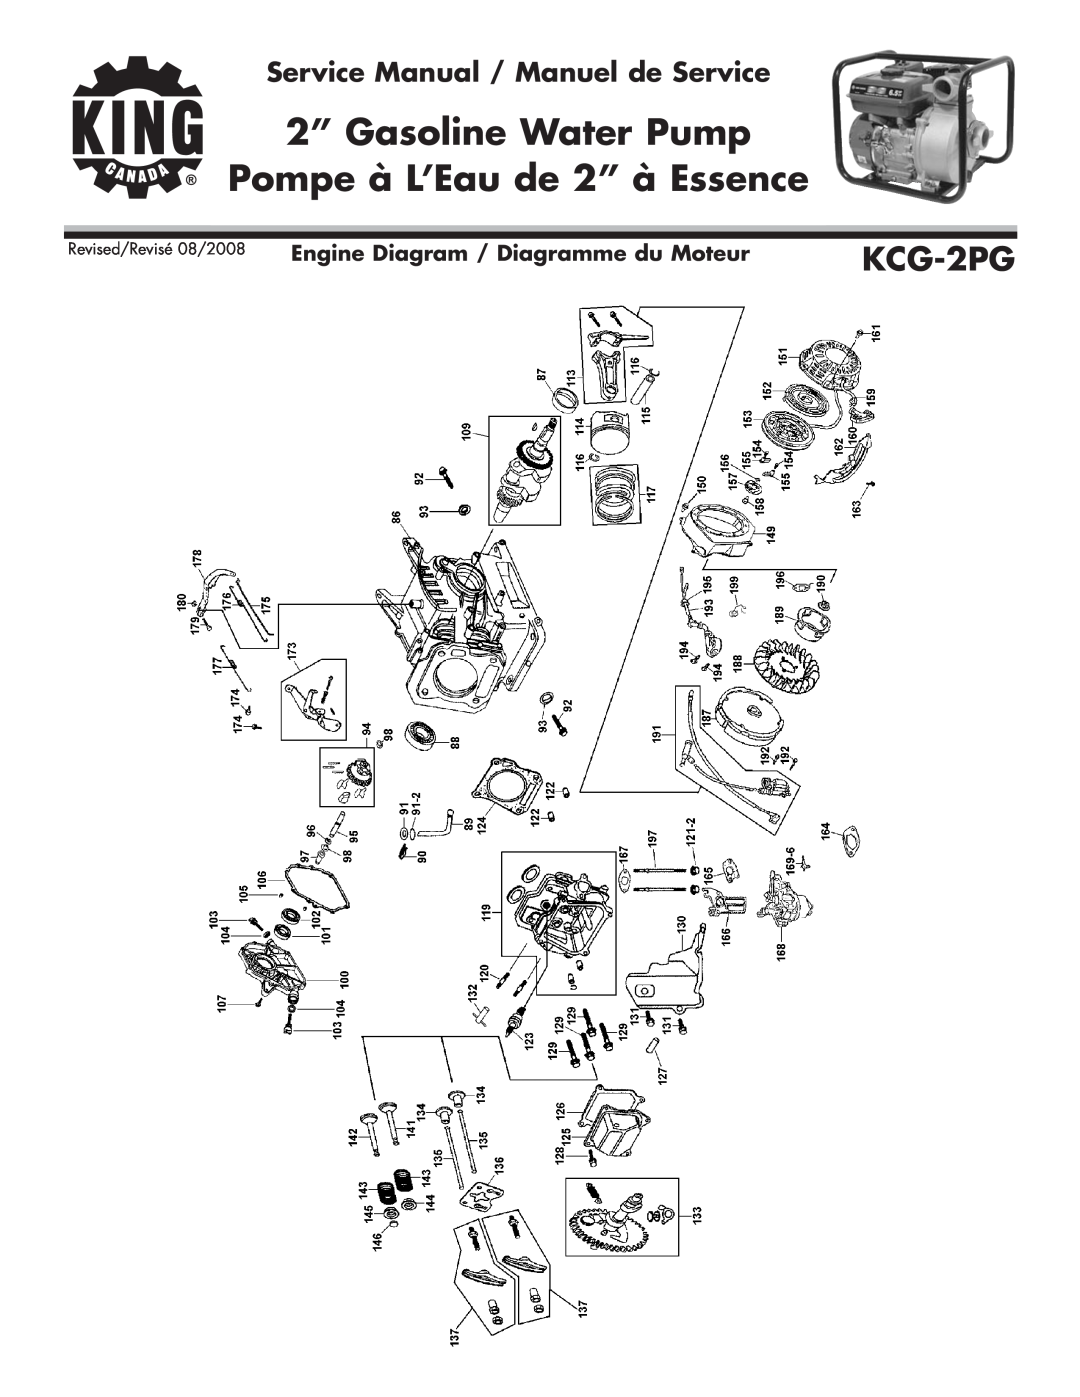 King Canada KCG-2PG service manual 2” Gasoline Water Pump, Pompe à L’Eau de 2” à Essence, Revised/Revisé 08/2008 